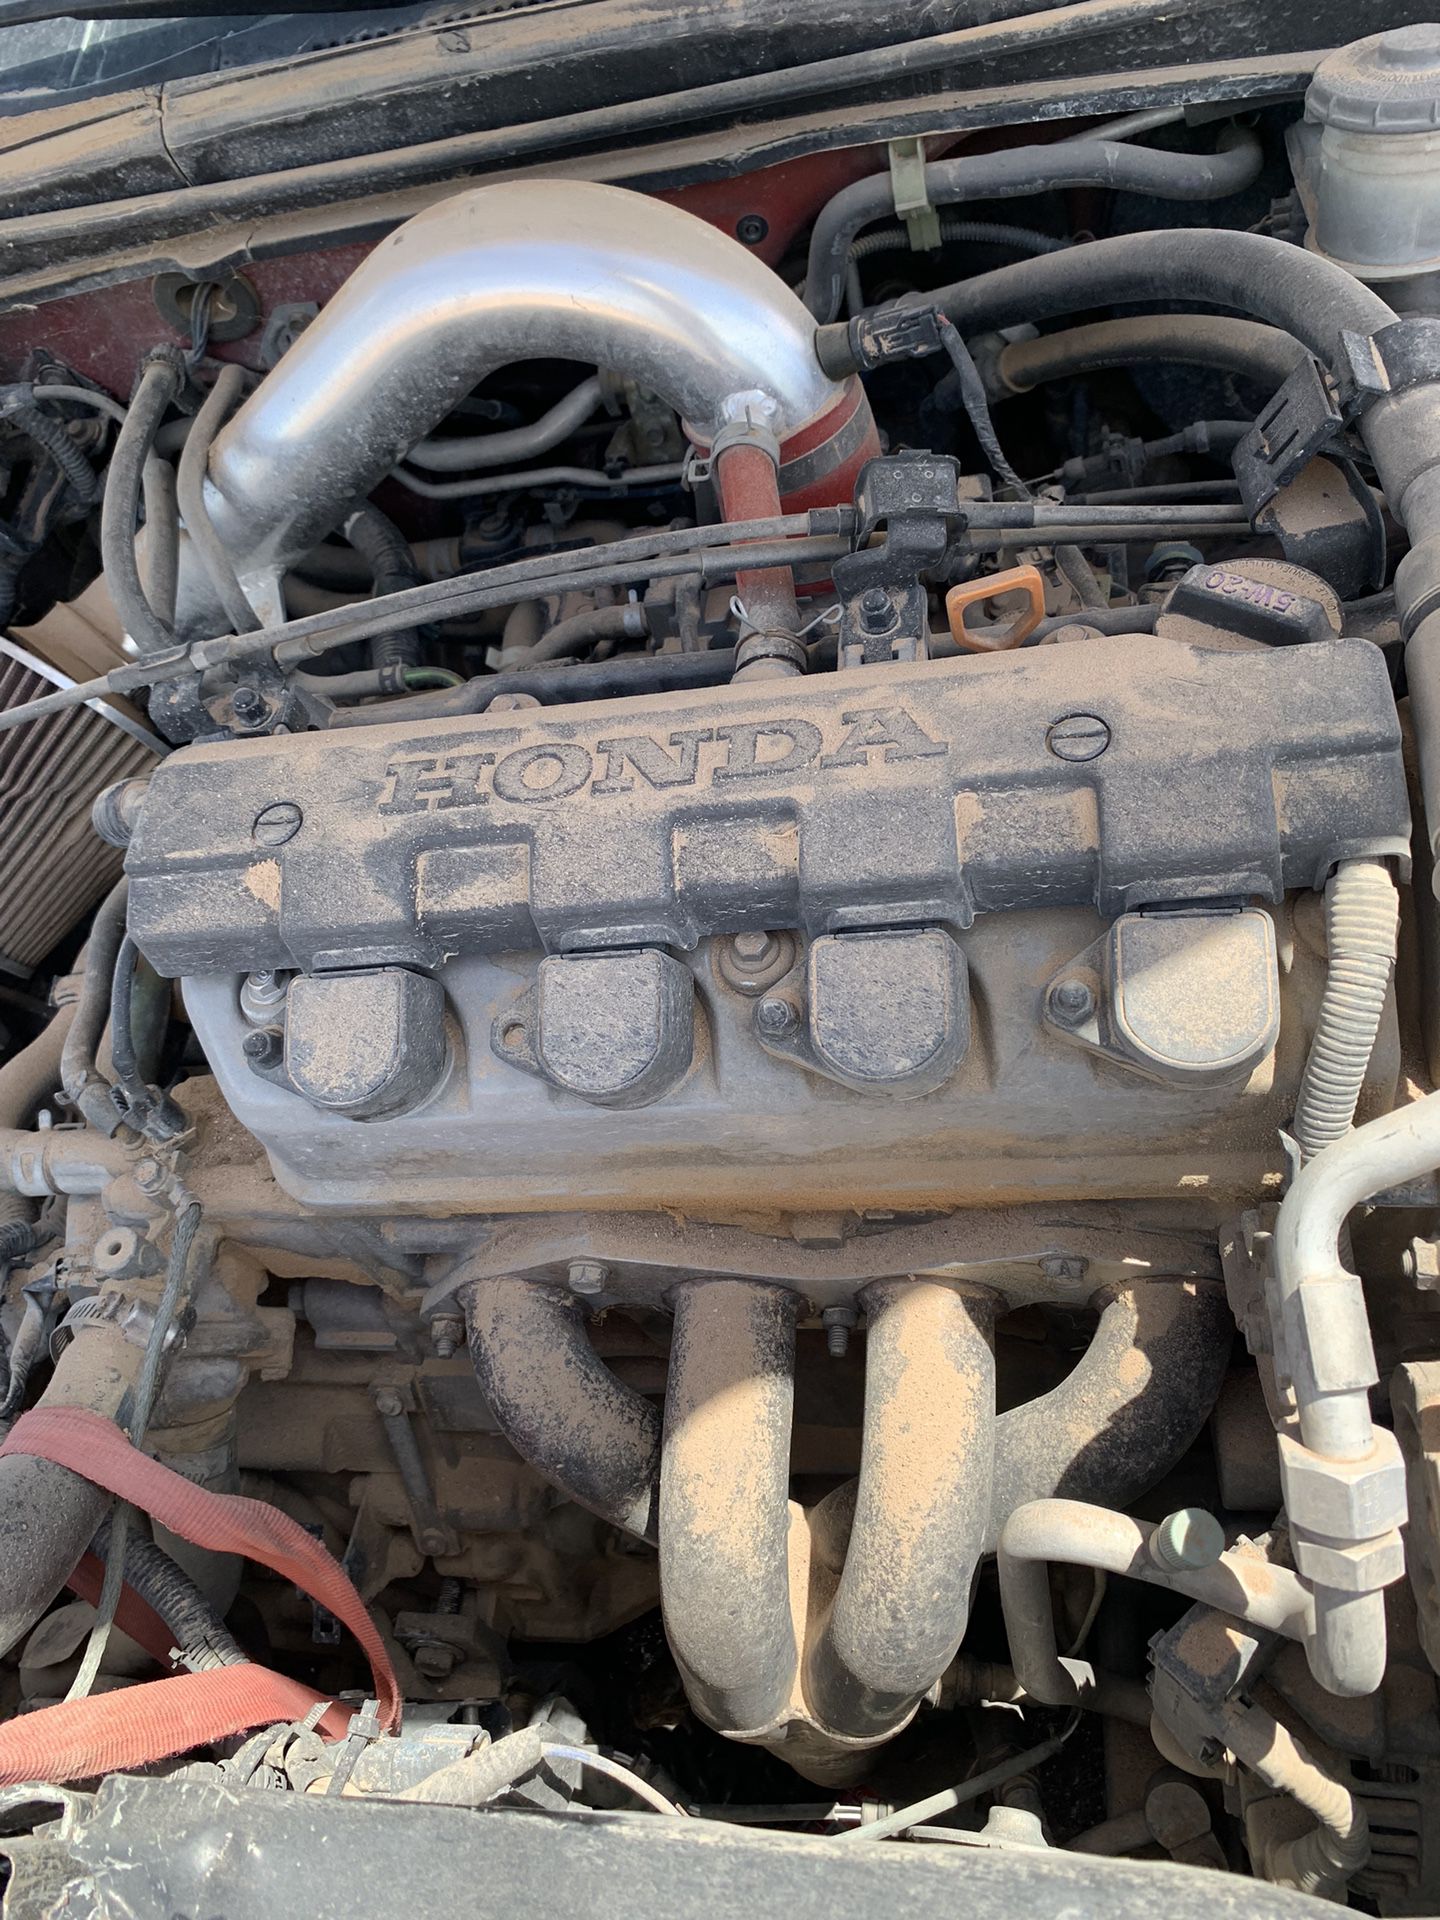 2003 Honda Civic Engine & Transmission/Parts